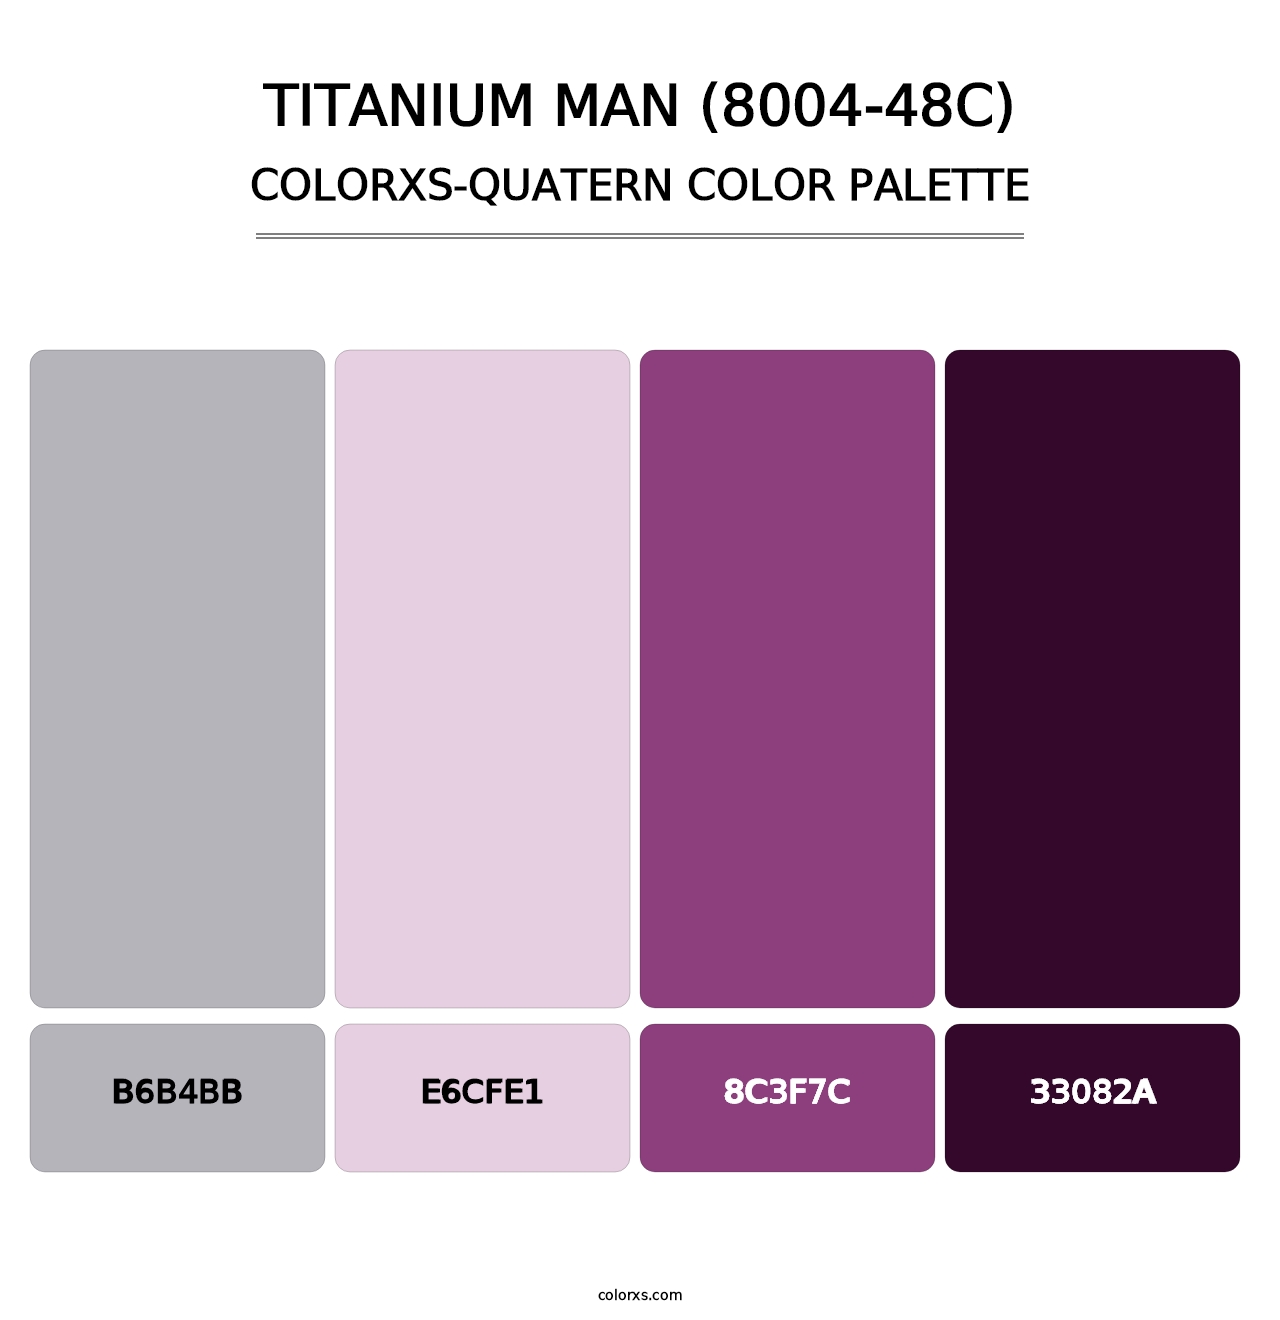 Titanium Man (8004-48C) - Colorxs Quatern Palette